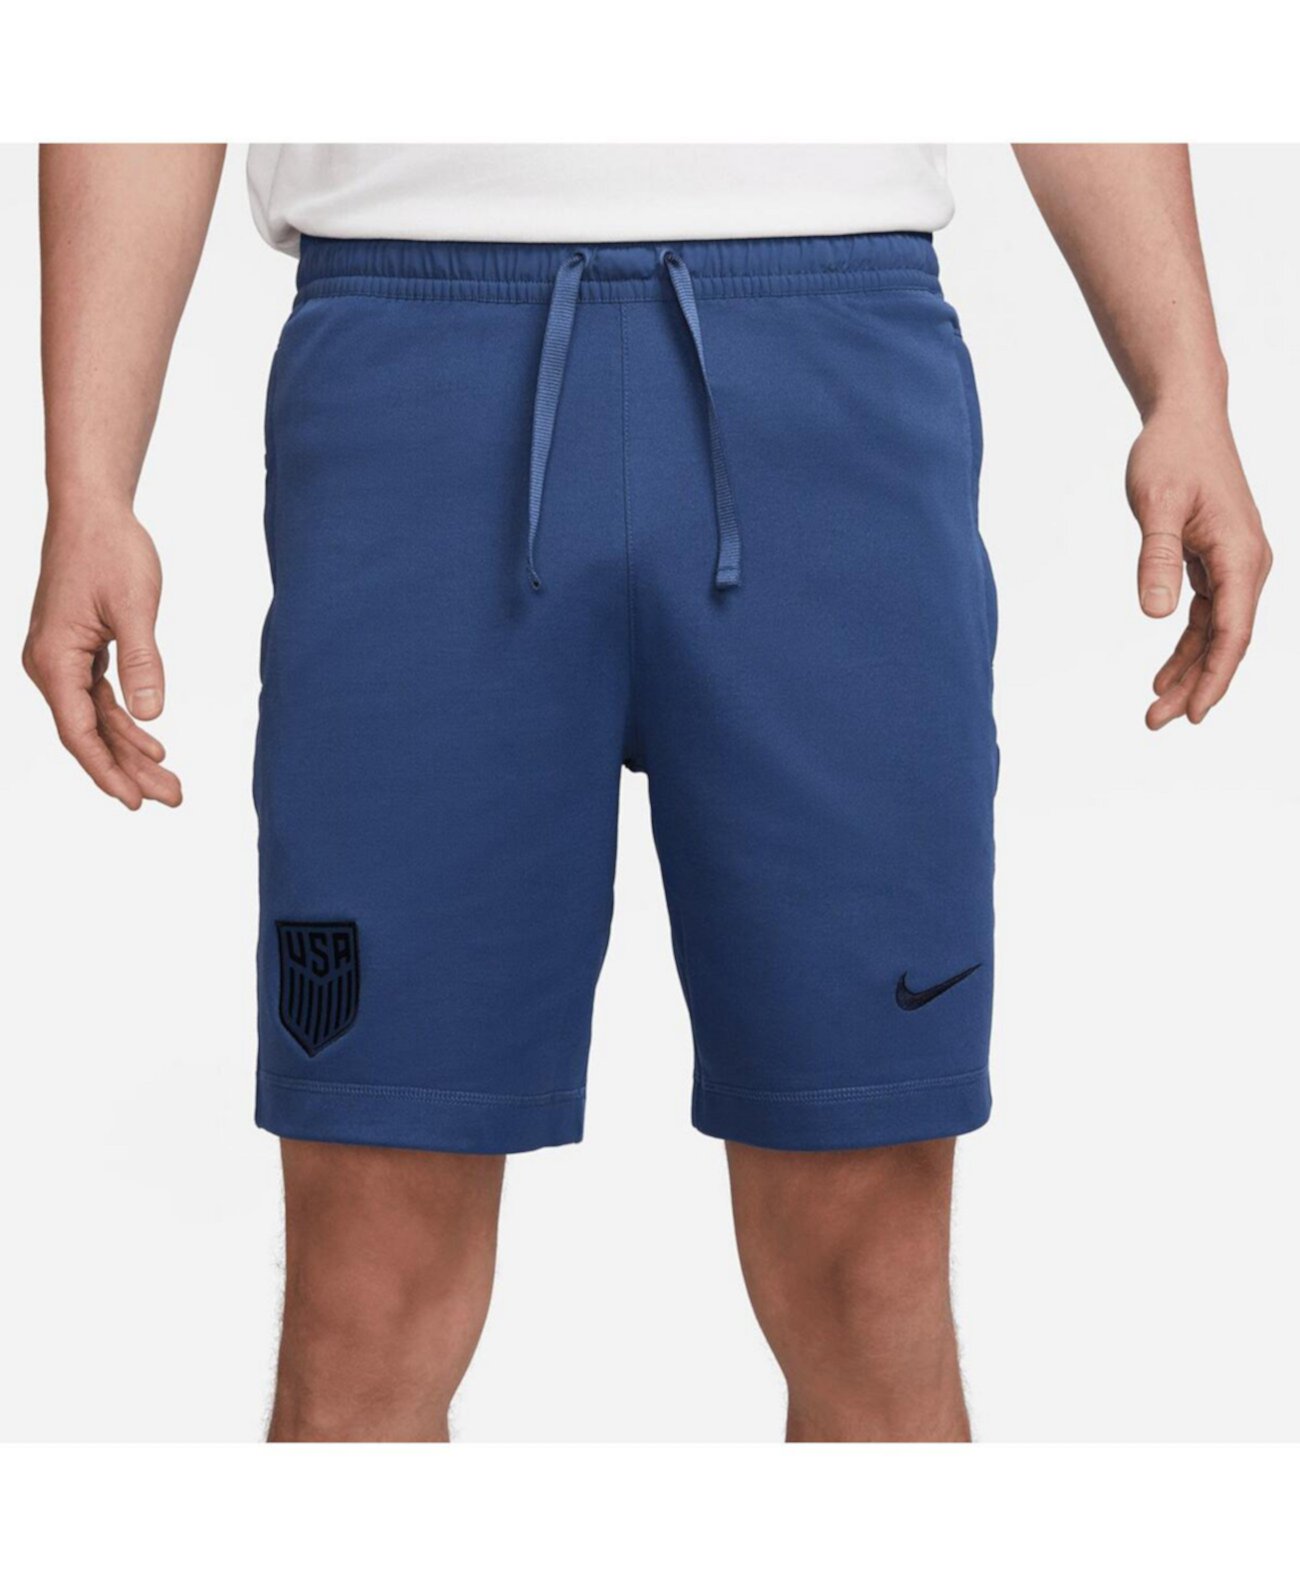 Мужские дорожные шорты темно-синего цвета USMNT Nike